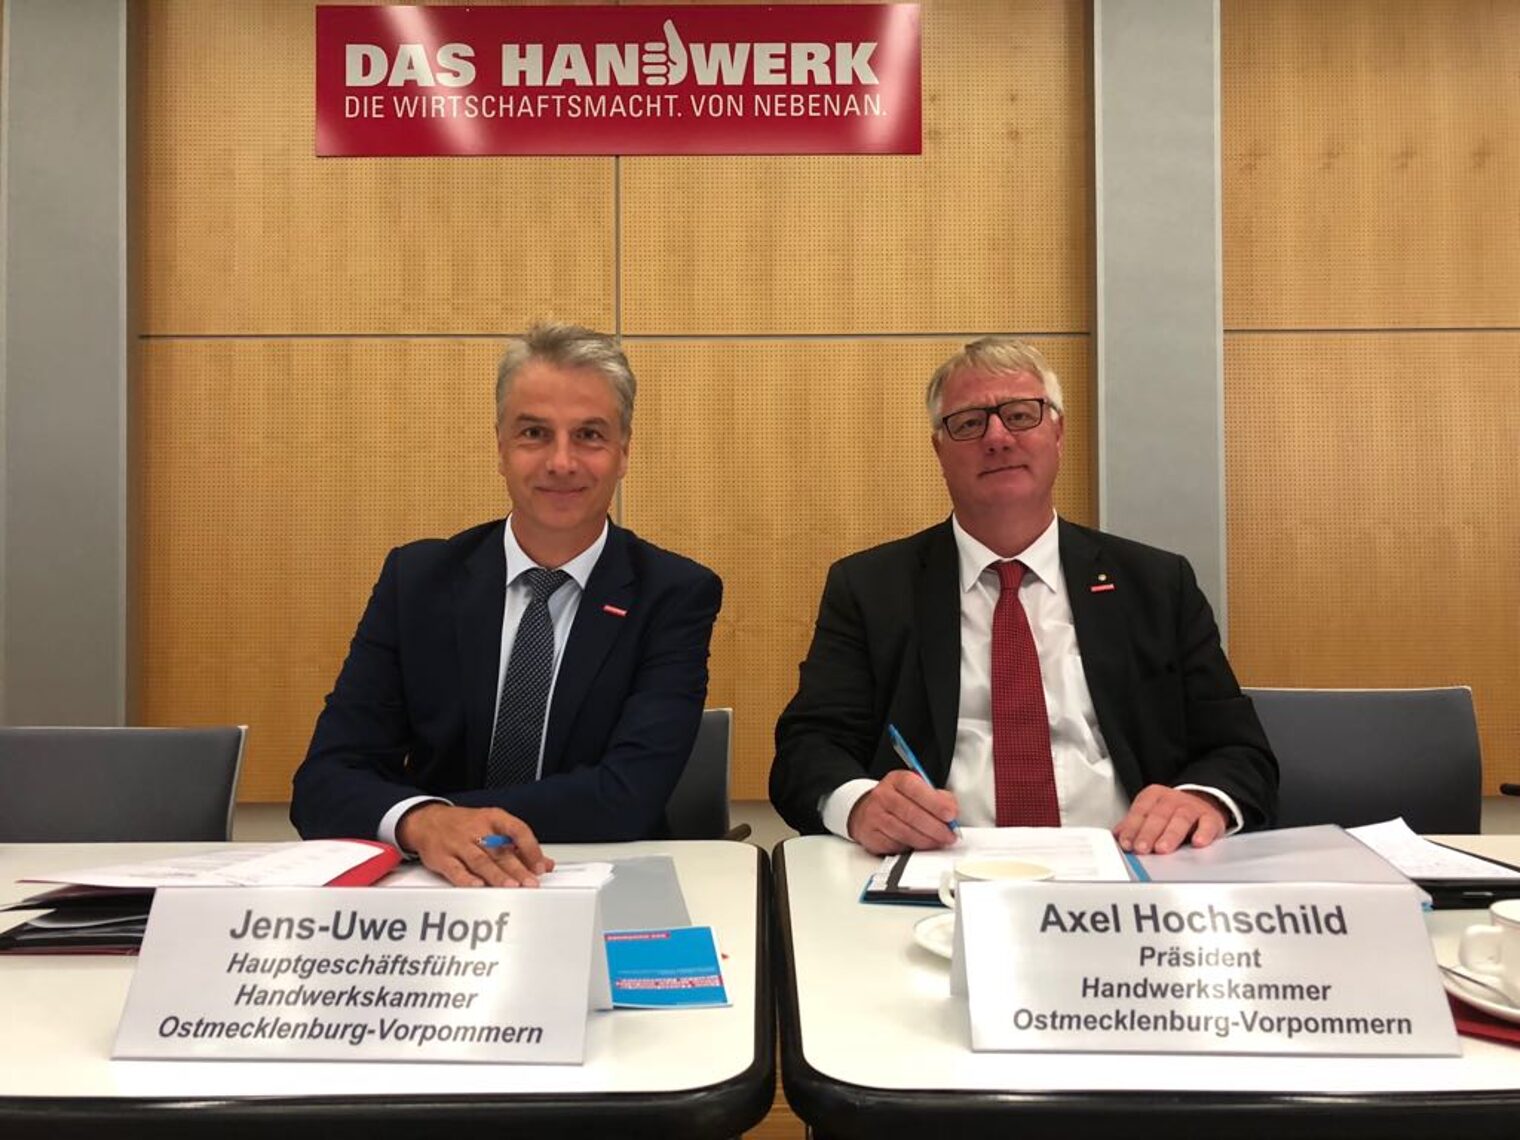 Hauptgeschäftsführer Jens-Uwe Hopf und Präsident Axel Hochschild der Handwerkskammer Ostmecklenburg-Vorpommern